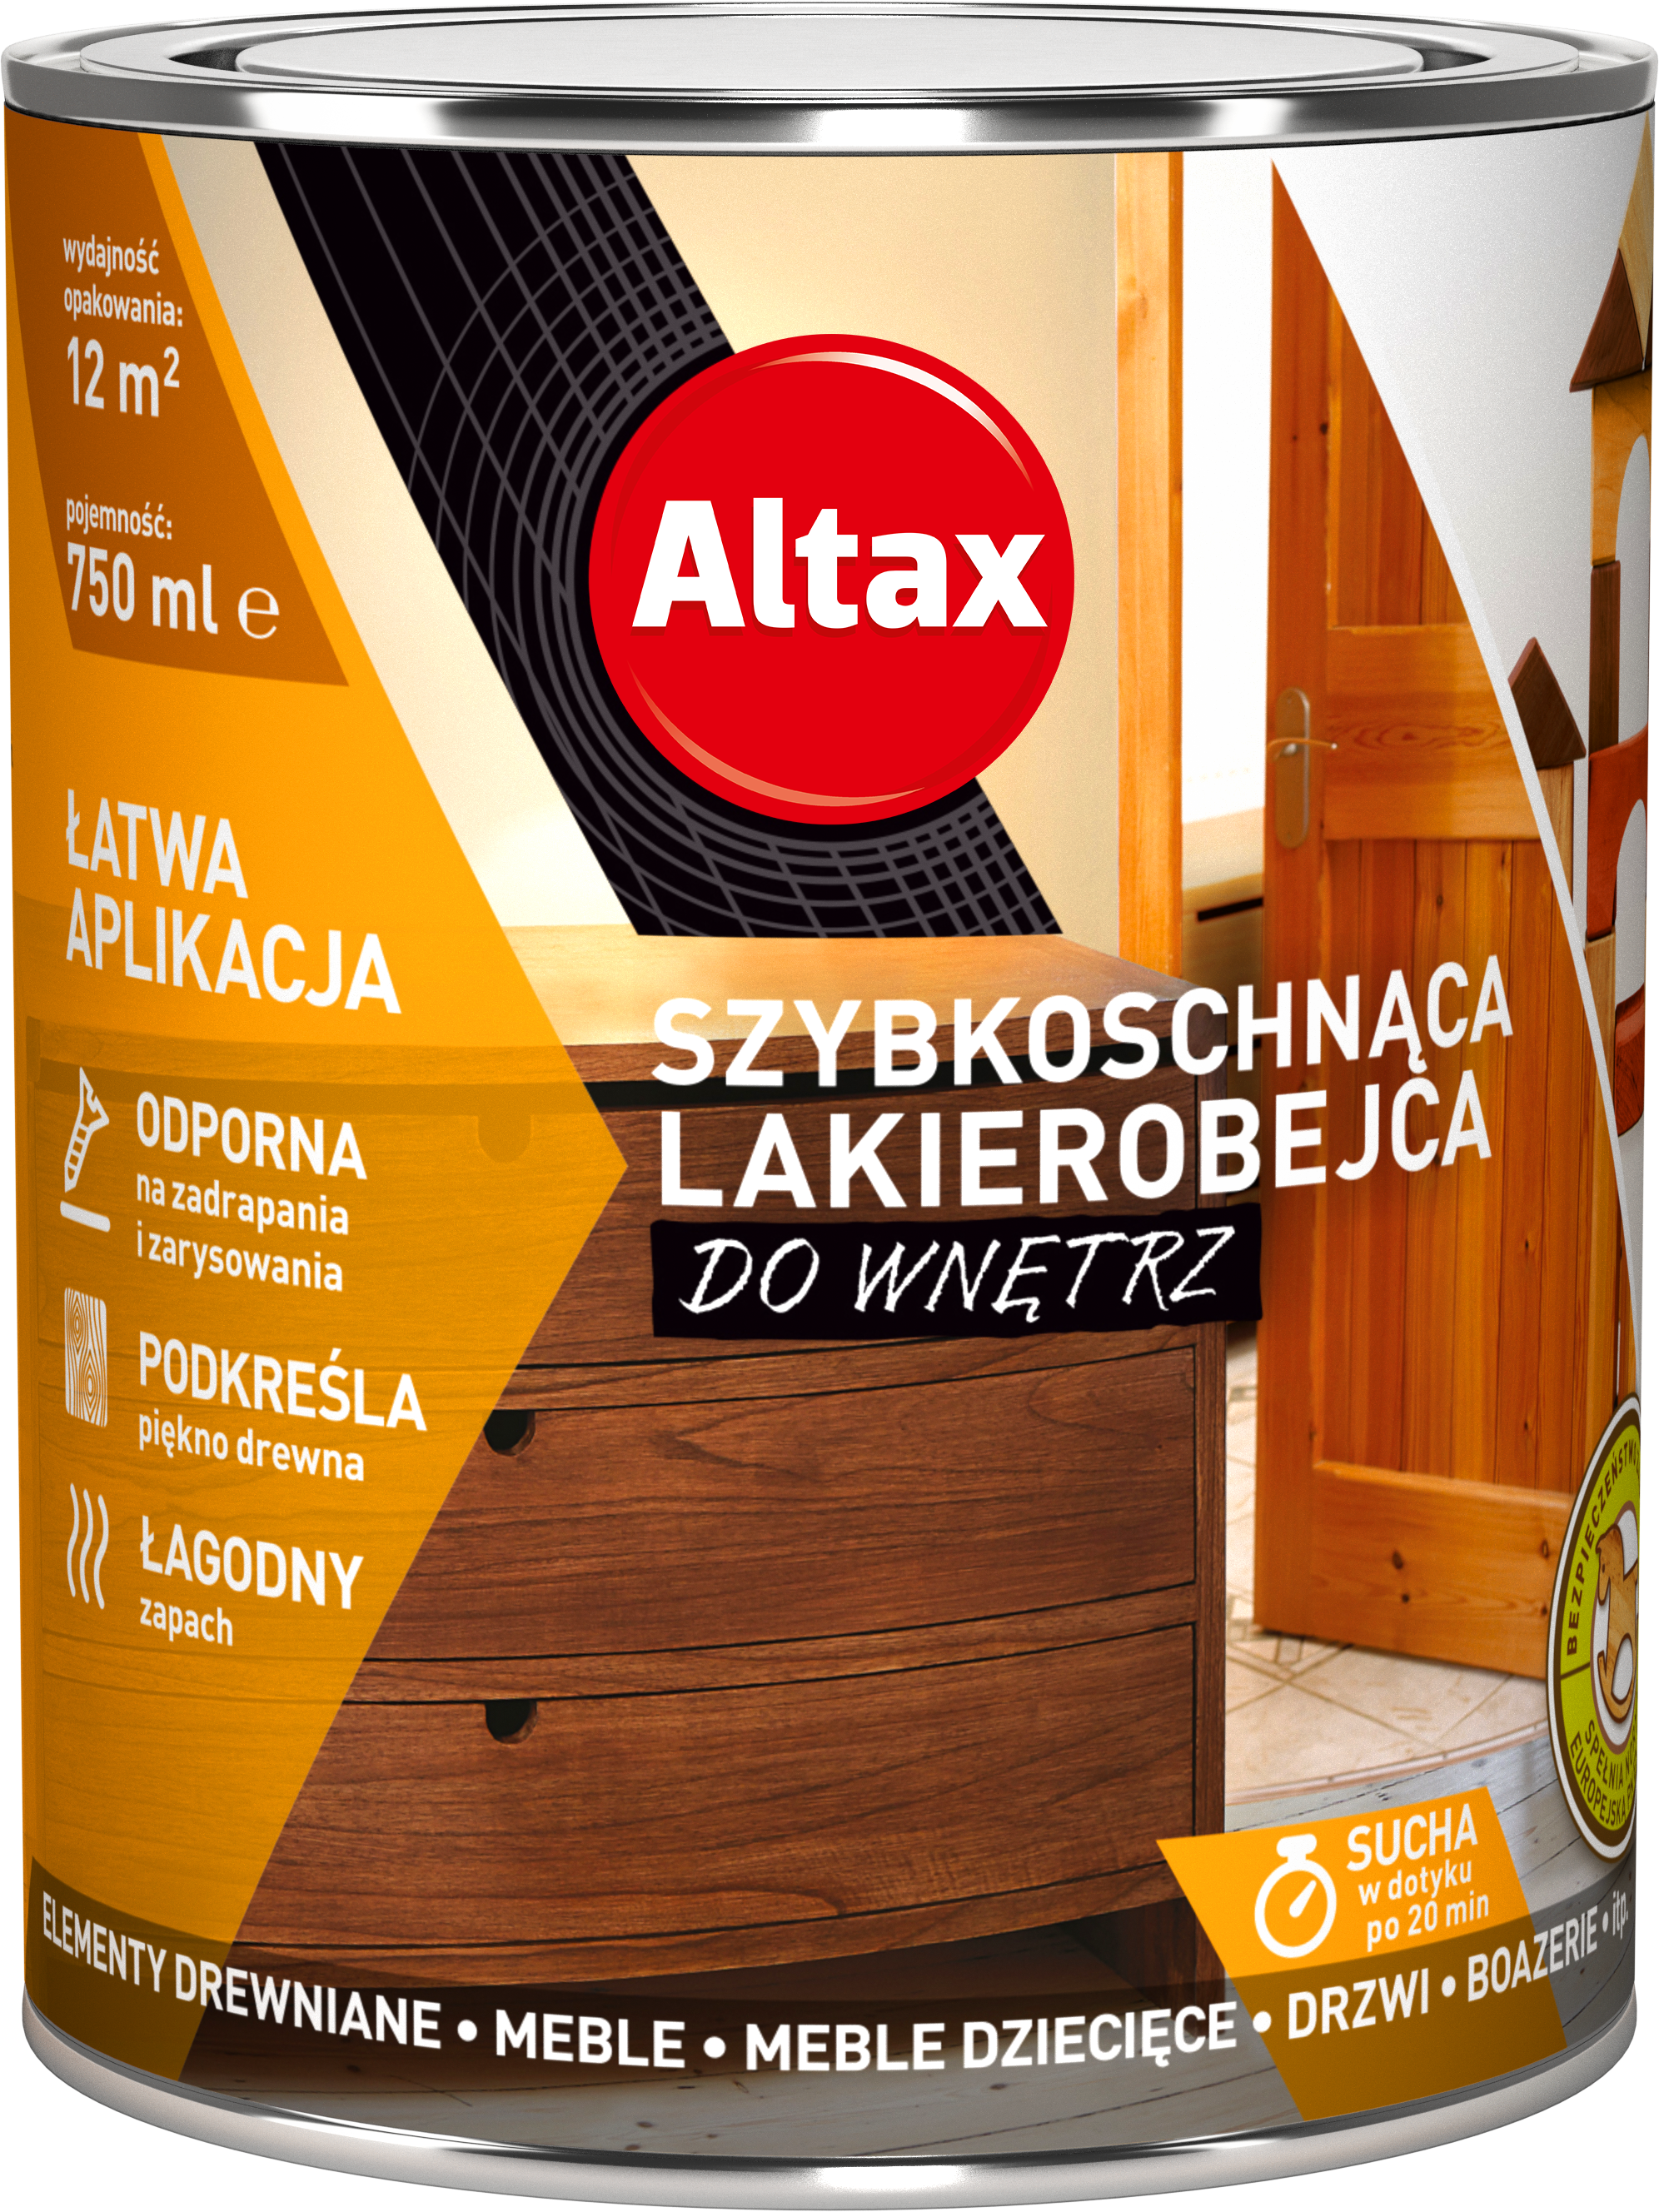 ALTAX-szybkoschnaca-lakierobejca-do-wnetrz-750ml-01